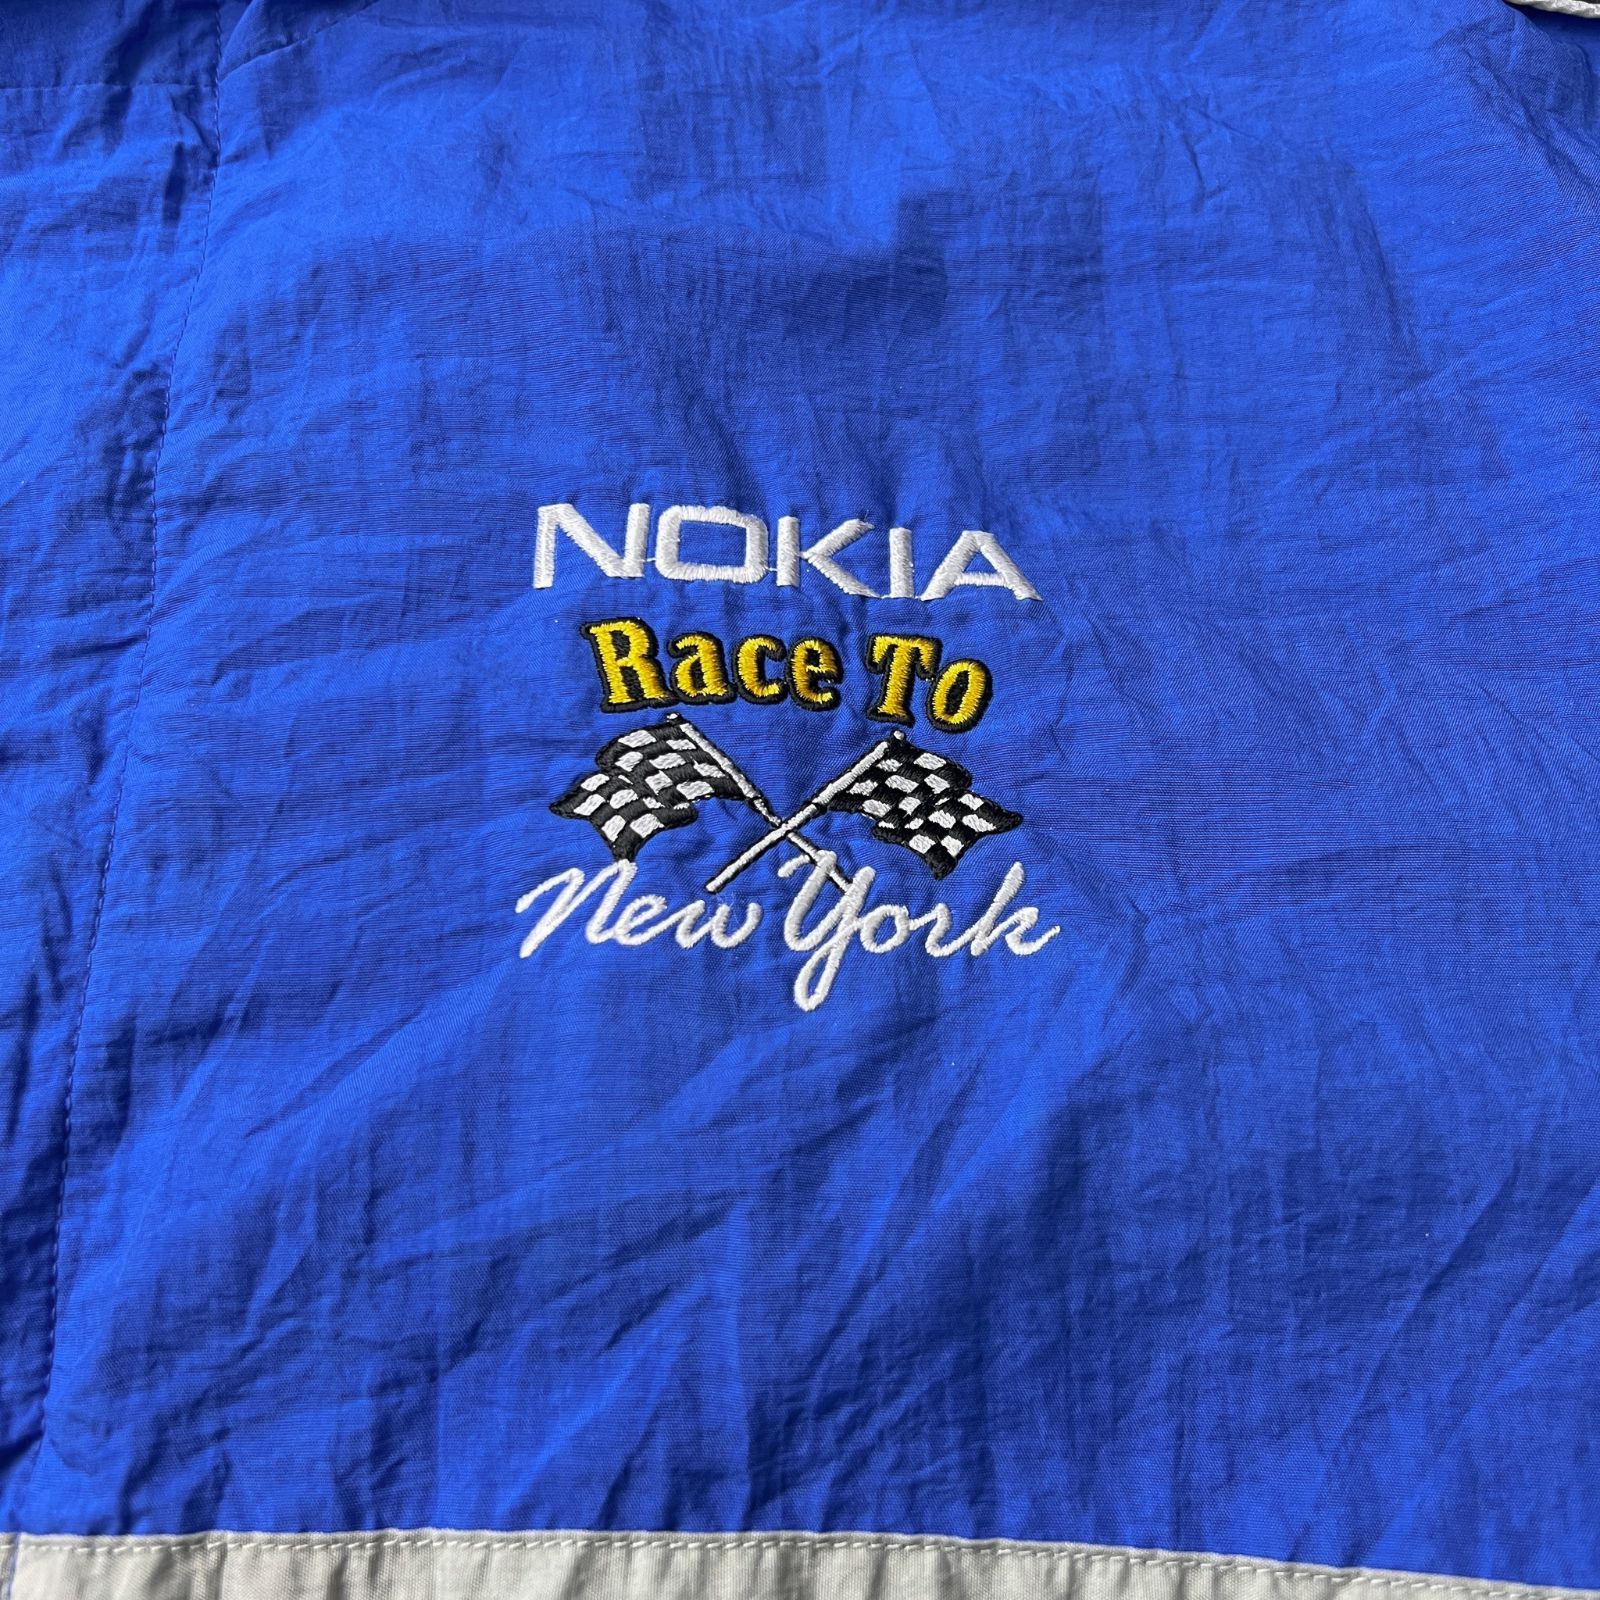 NOKIA ノキア レーシングジャケット ナイロンジャケット 企業ロゴ 企業系 90s 90年代 ビッグシルエット オーバーサイズ ボックスシルエット